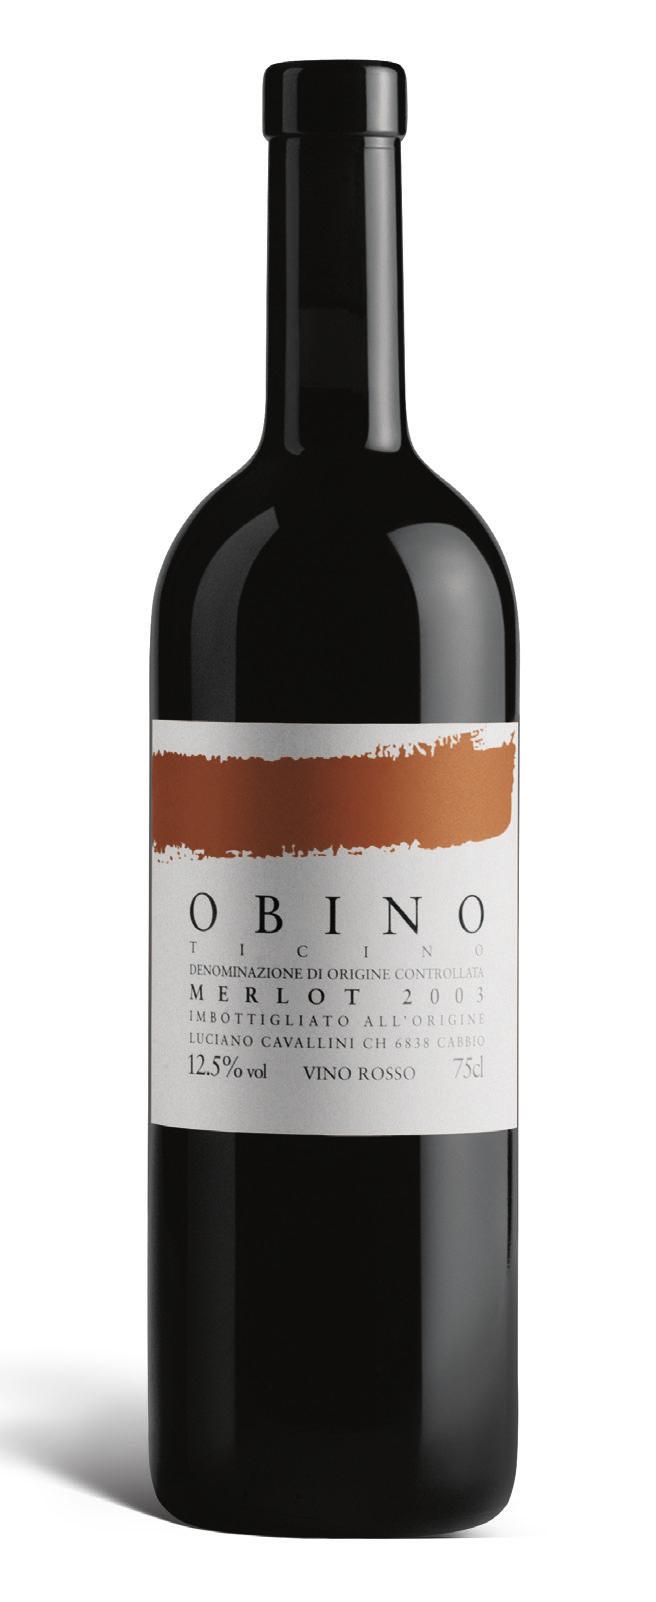 OBINO Vino tipico legato al proprio terreno d origine, l Obino è una crus.